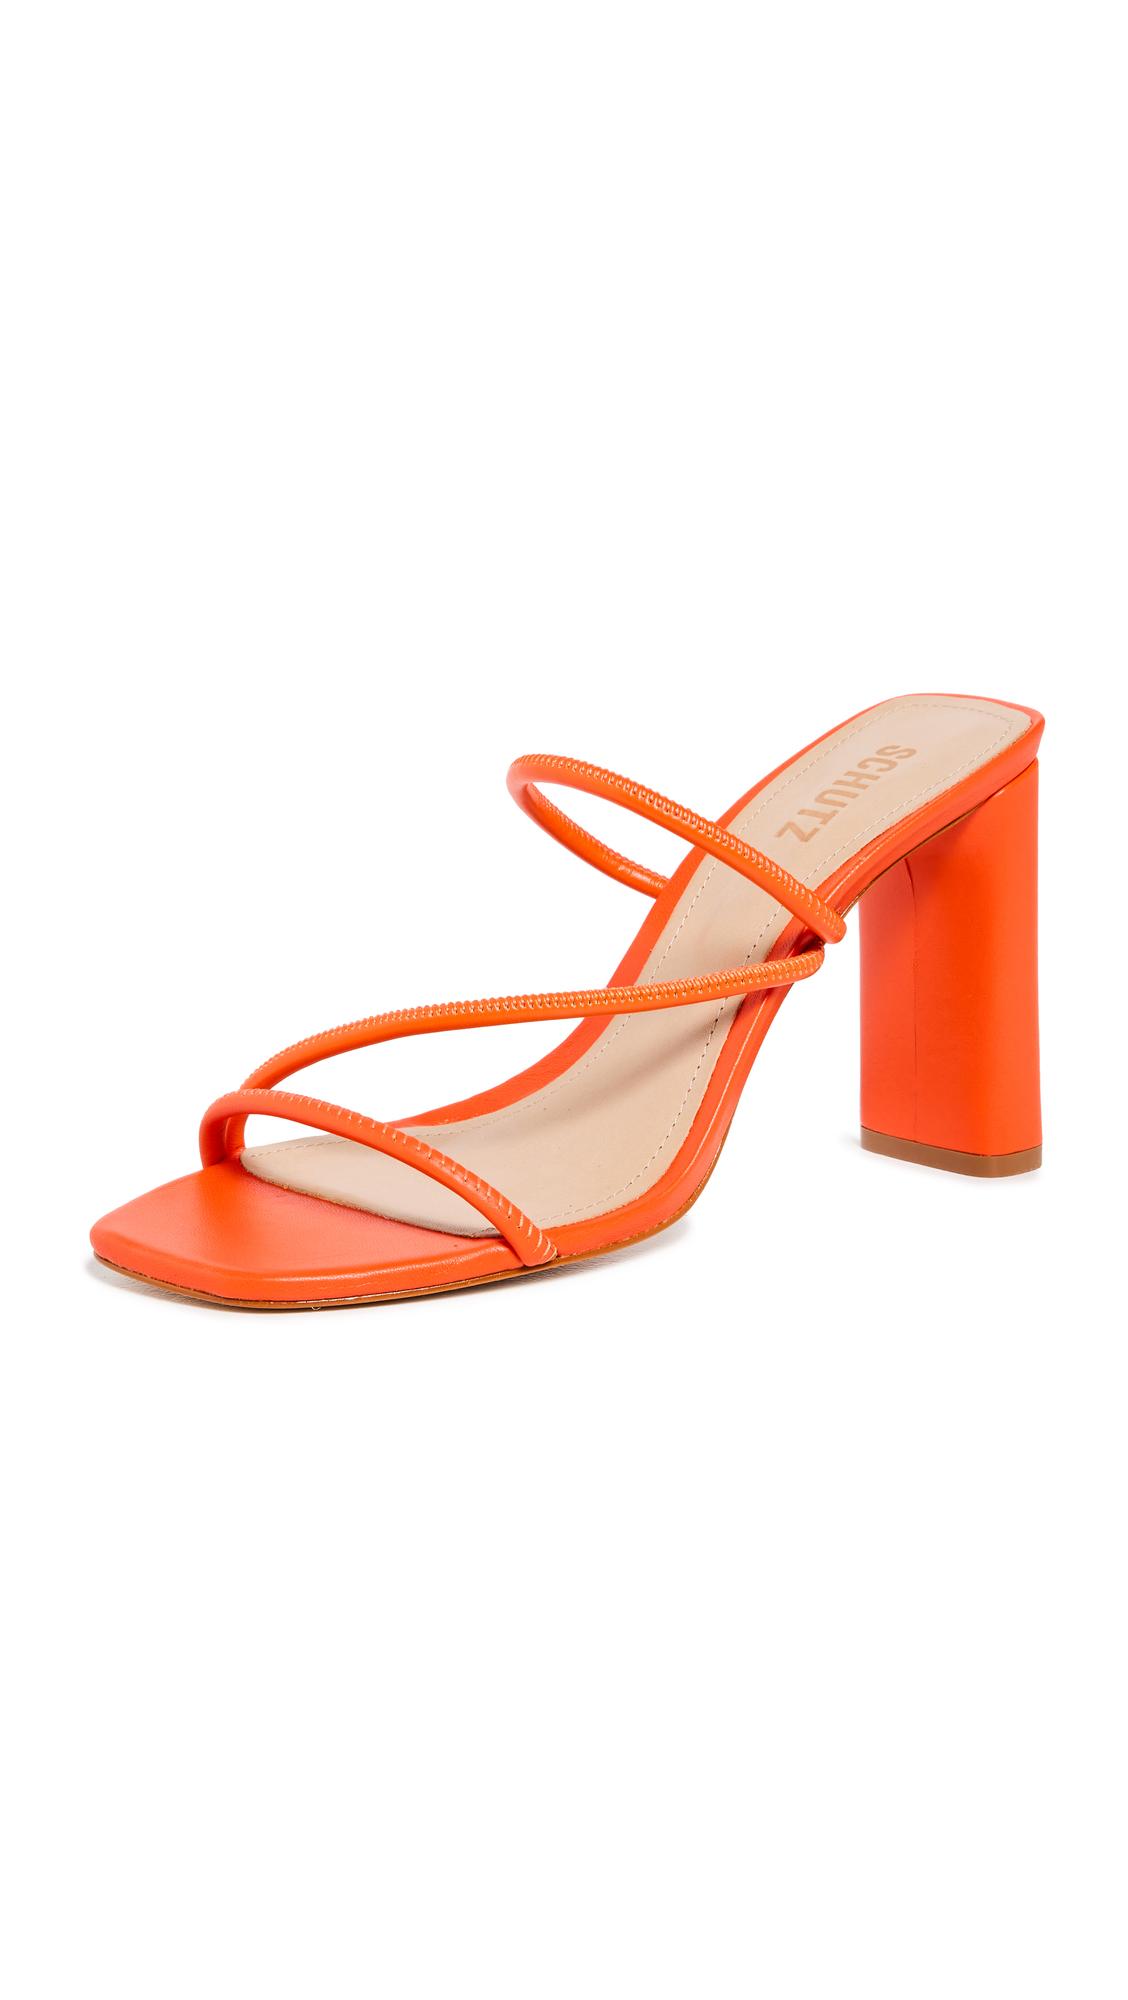 SCHUTZ SHOES Chessie Sandals in Orange | Lyst